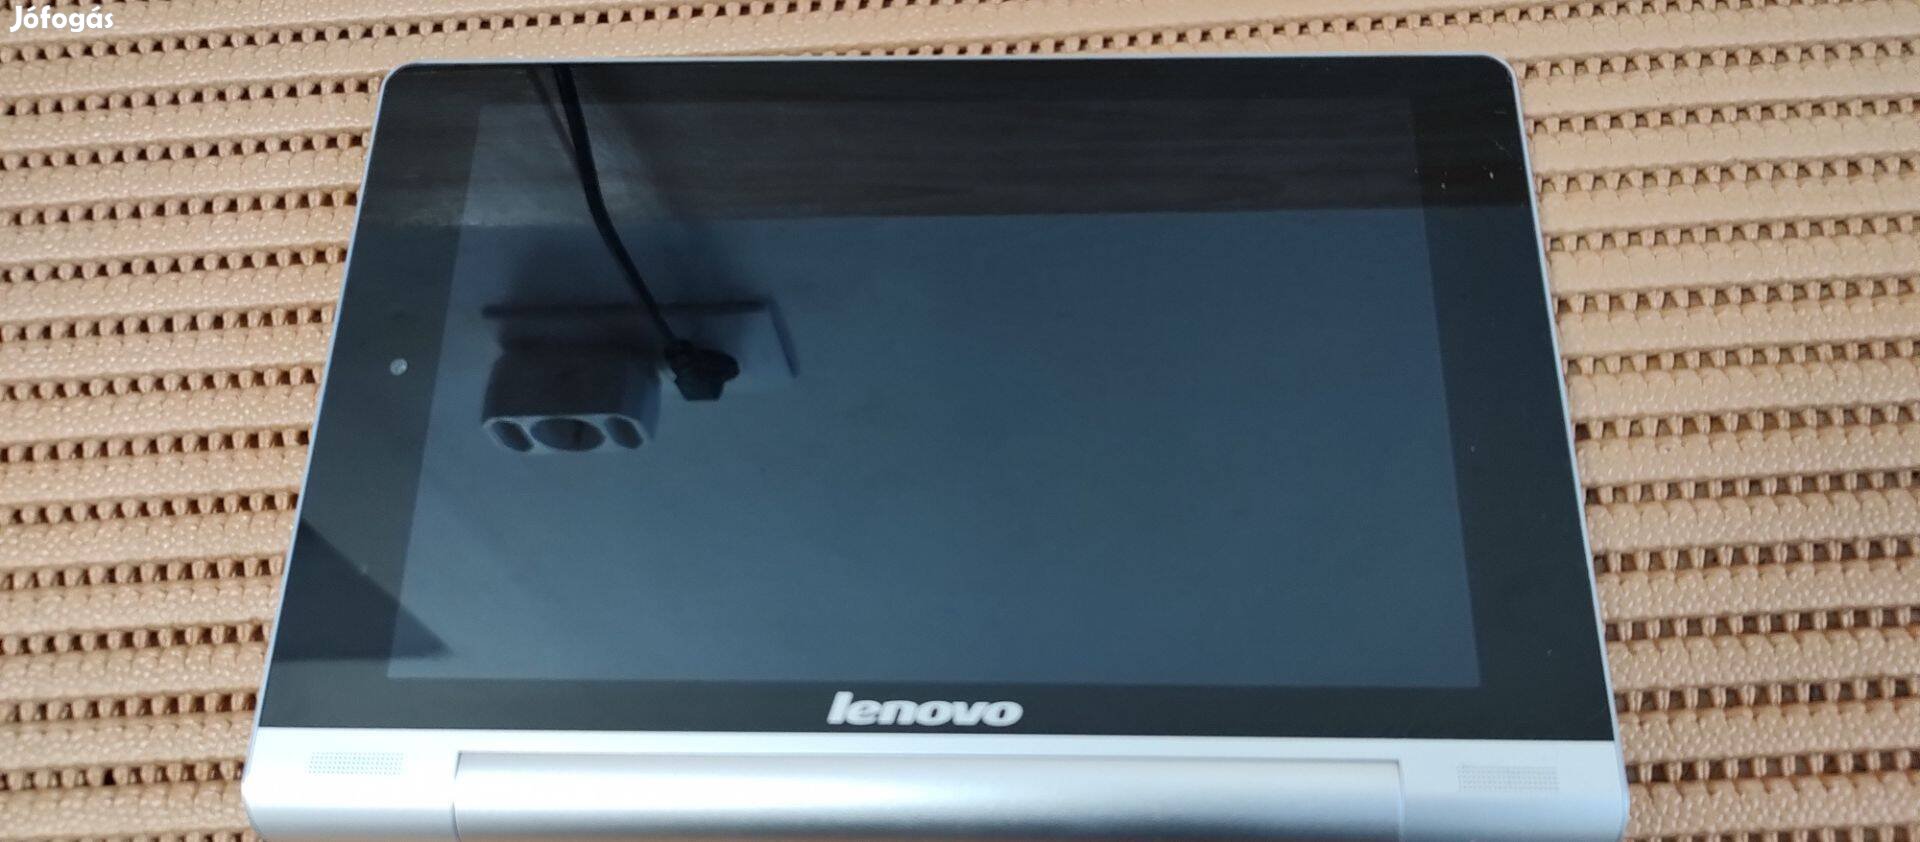 Lenovo Yoga tab 8" model 60043 tablet pc, hibás állapotban